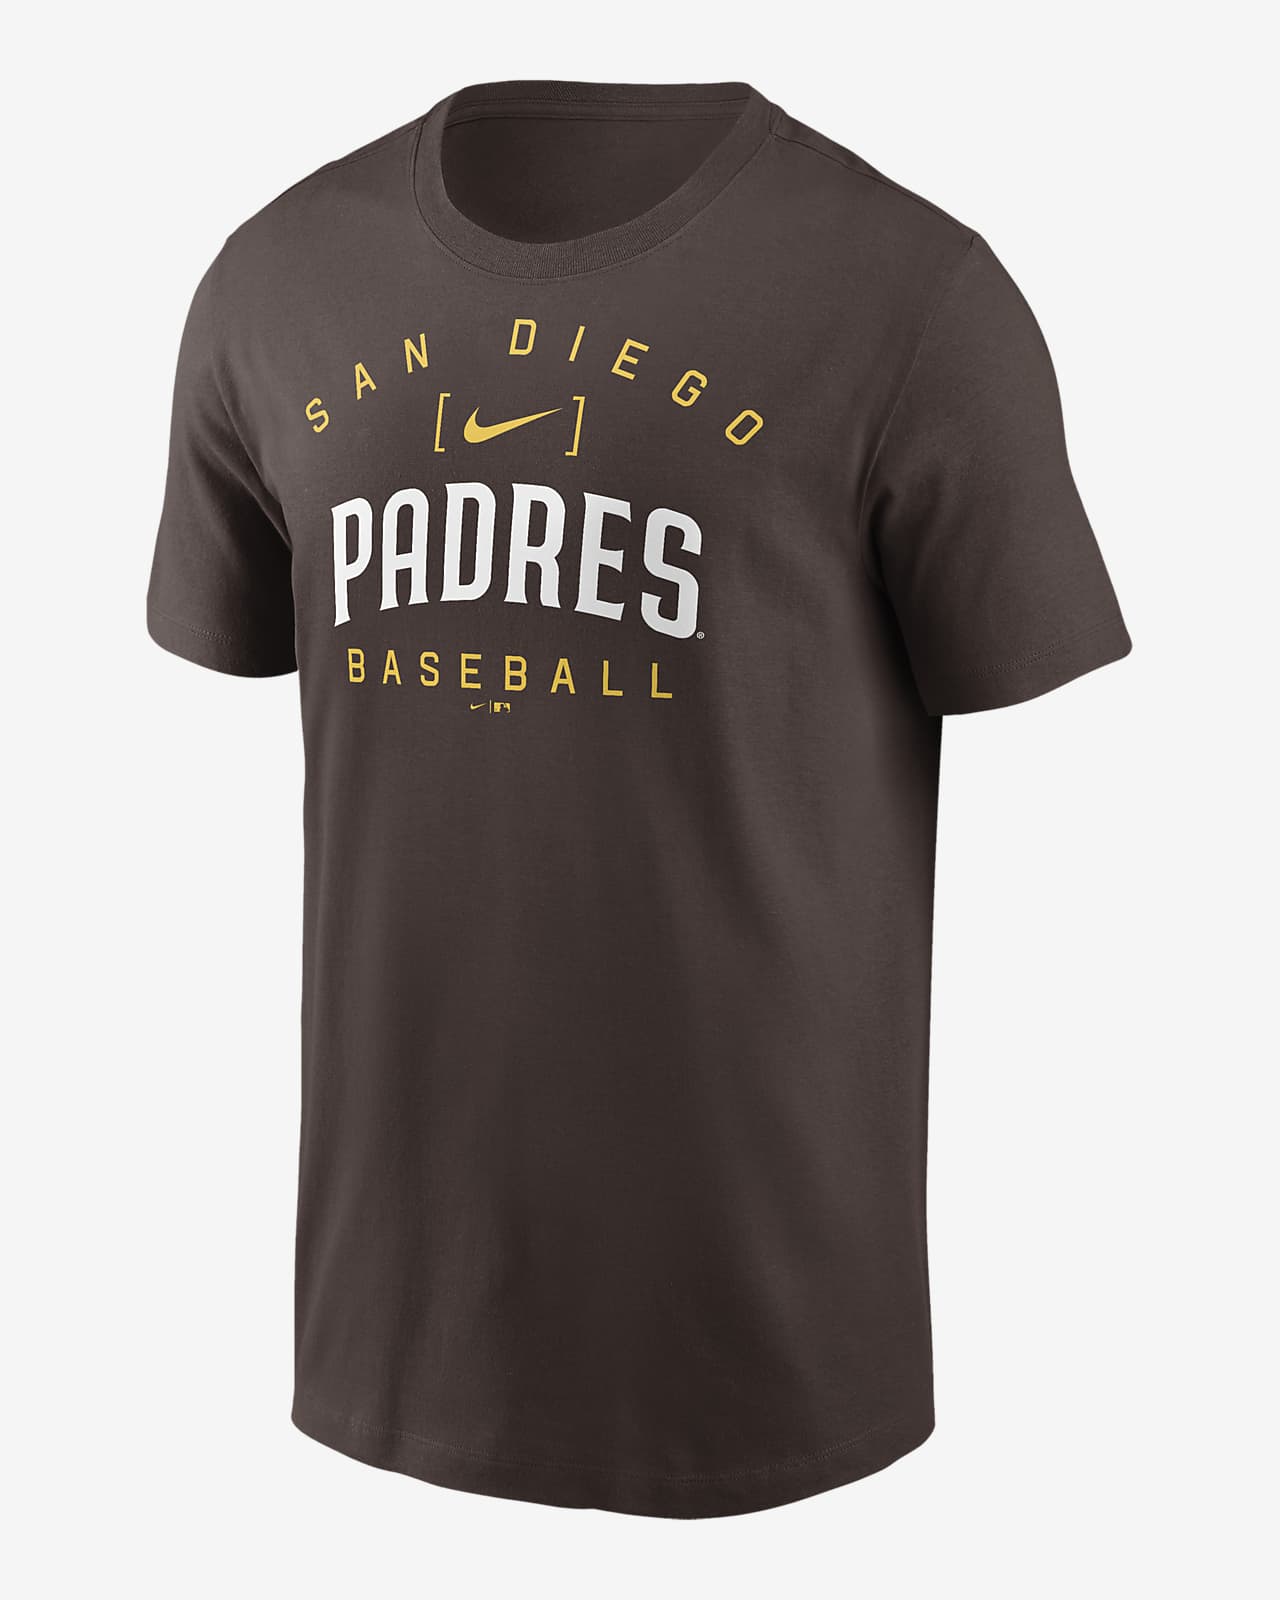 Playera Nike de la MLB para hombre San Diego Padres Home Team Athletic Arch